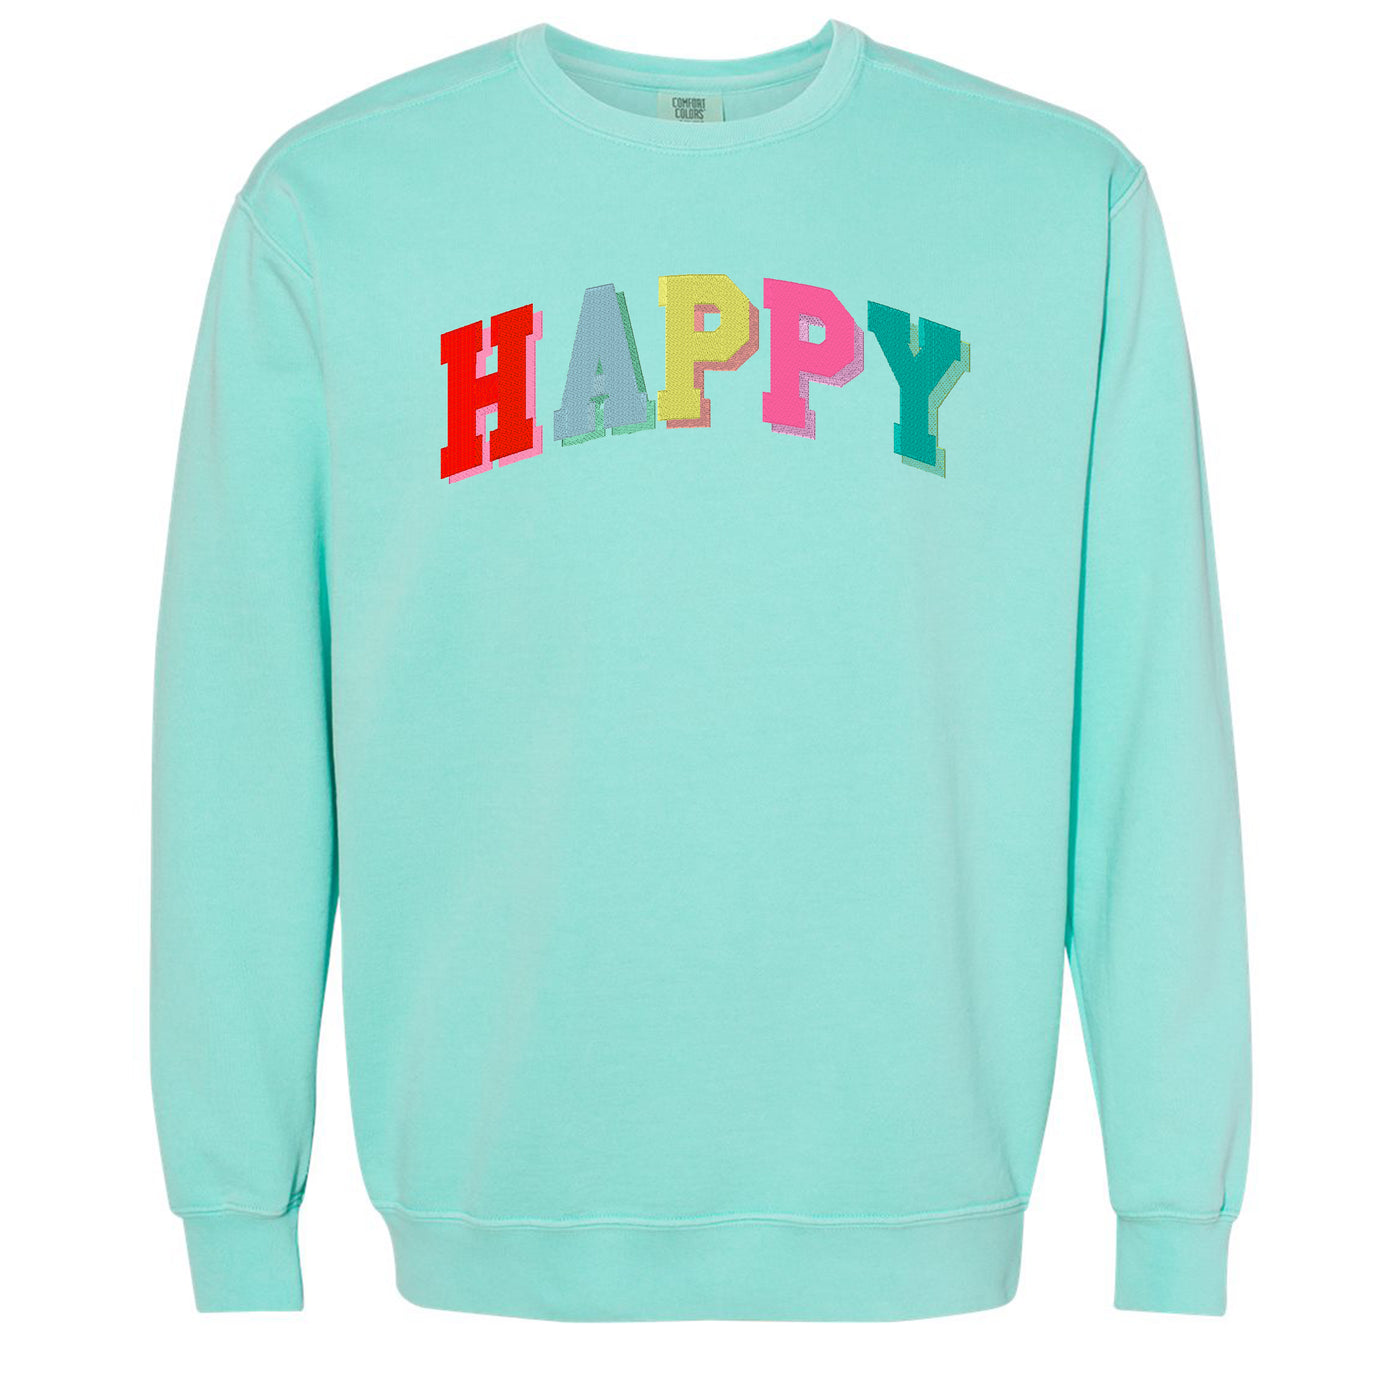 'Happy' Comfort Colors Sweatshirt